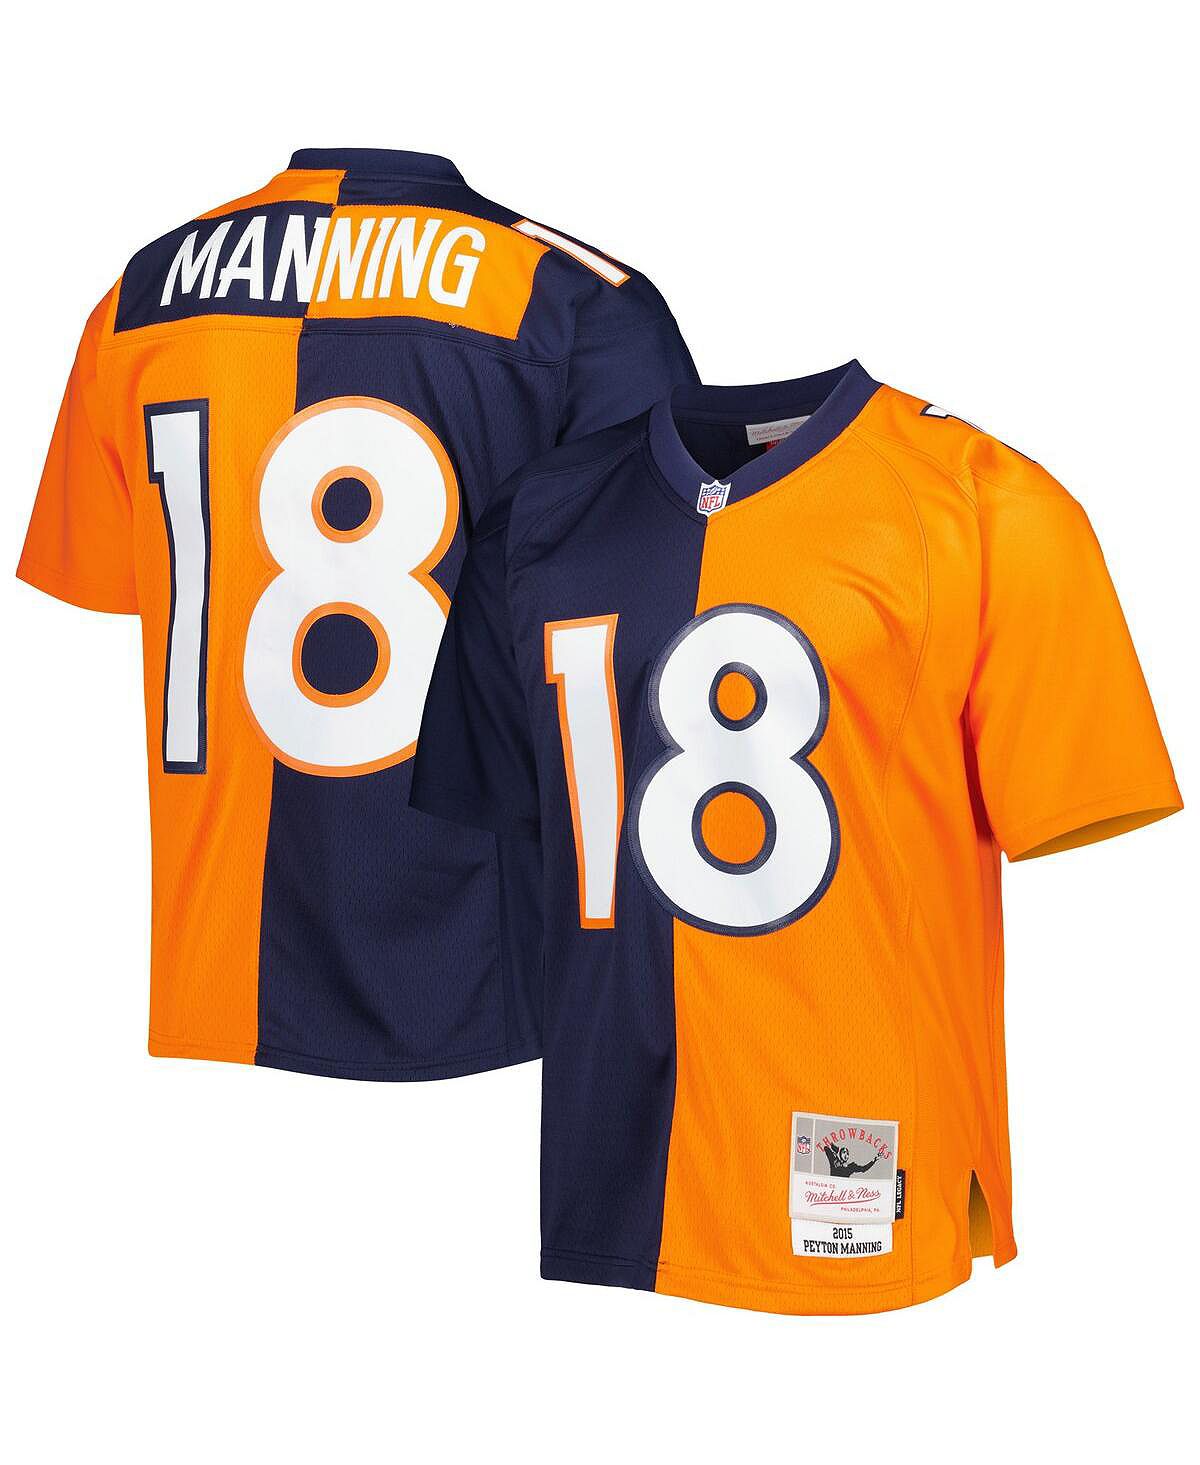 Мужская футболка peyton manning navy, orange denver broncos 2015 split legacy, копия джерси Mitchell & Ness, мульти manning m и др artists